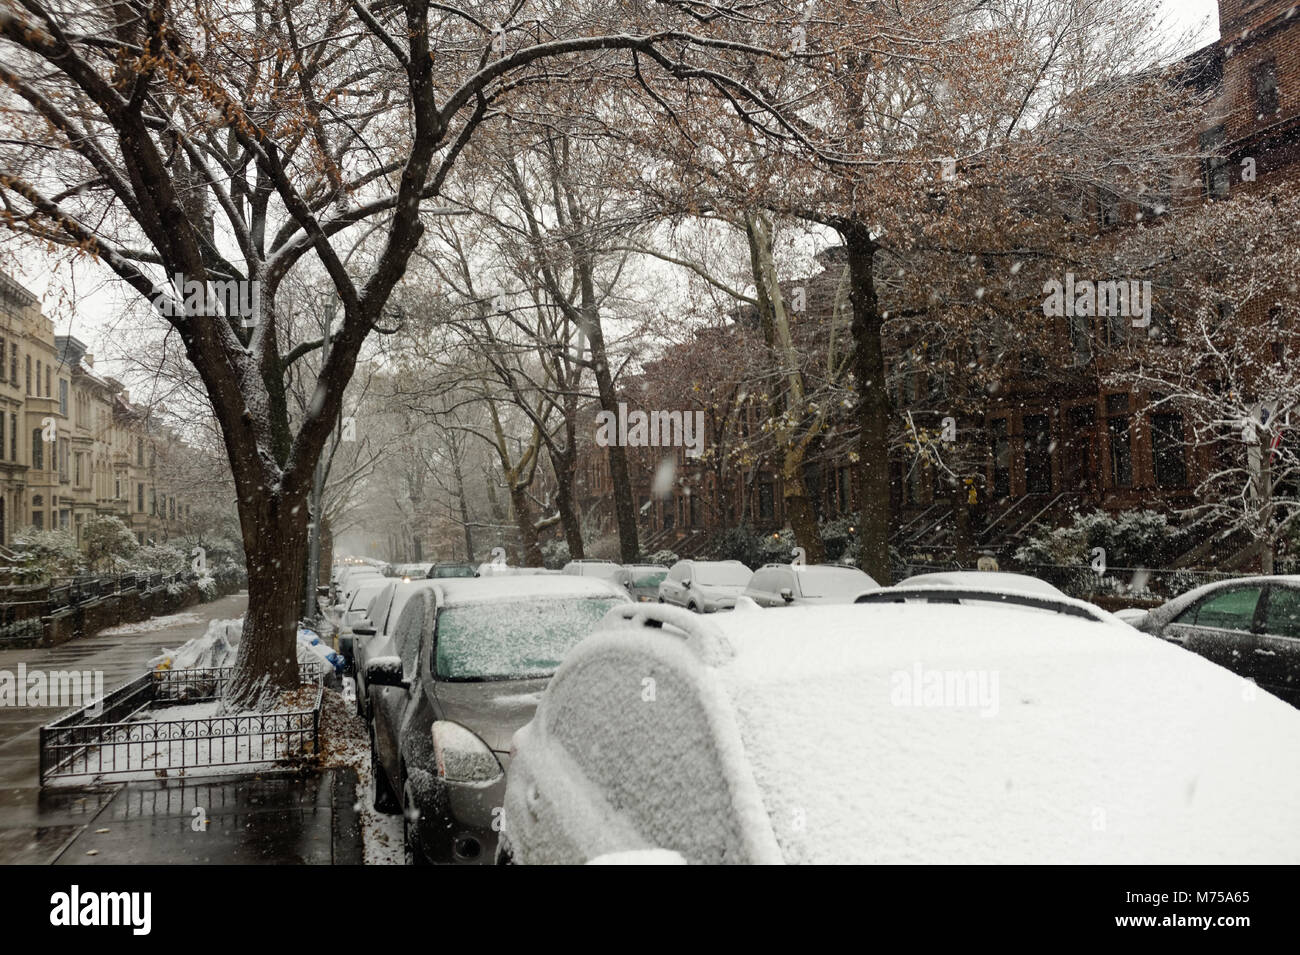 Voitures couvertes de neige garées dans une rue bordée d'arbres après une tempête de neige à Brooklyn, New York. Banque D'Images